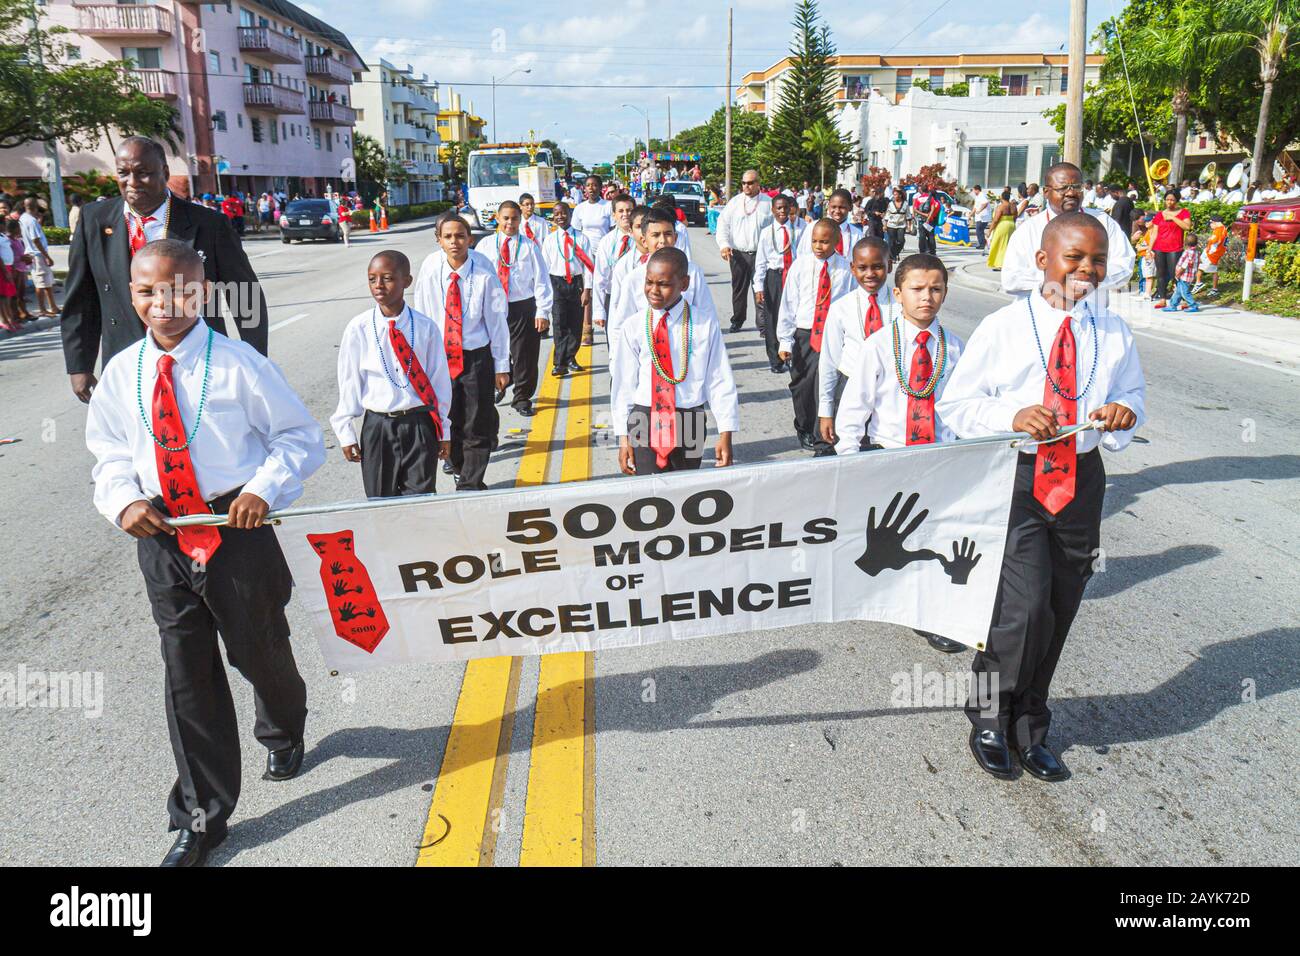 Miami Florida, North Miami, internationale Parade zum Thanksgiving Day, NE 125. Straße, lokale Feier, schwarze Studenten als Vorbilder der Exzellenz, bo Stockfoto